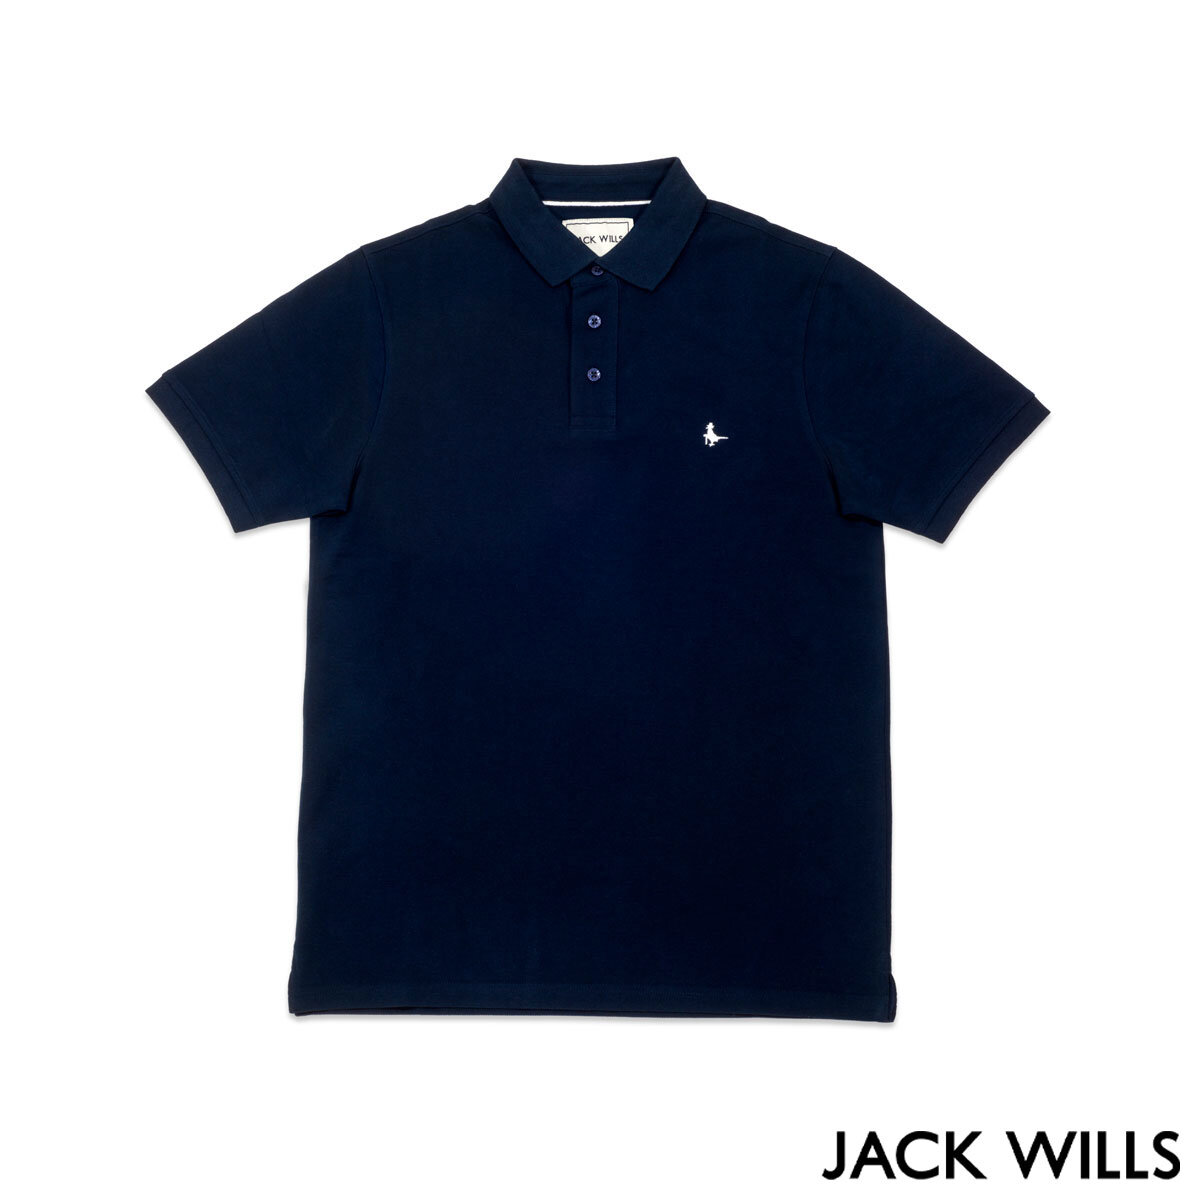 Jack Wills Men's Polo Shirt in Navy